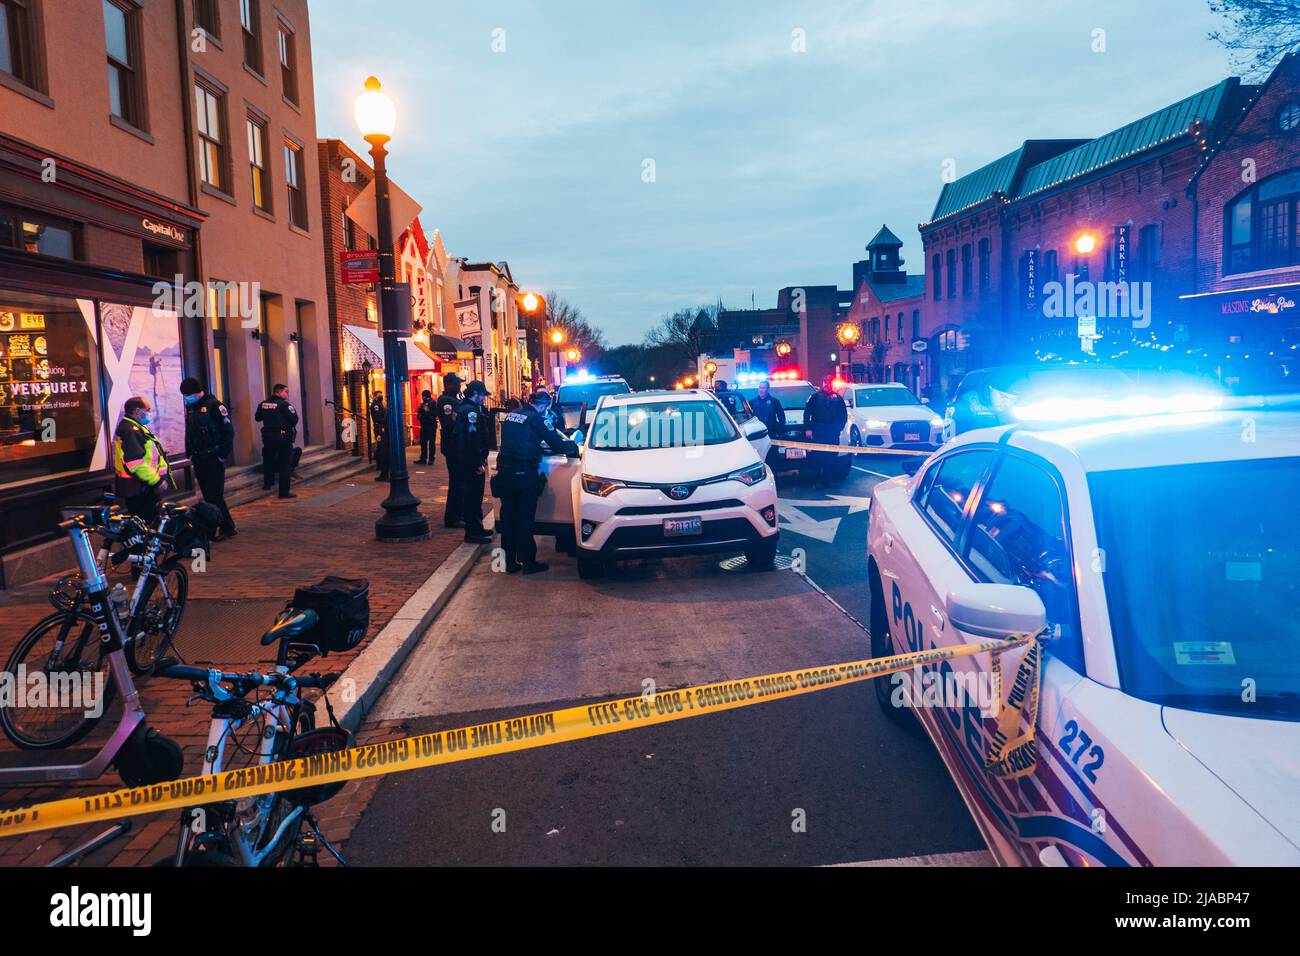 Die Polizei am Ort eines versuchten bewaffneten Raubüberfalls, bei dem Verdächtige mit Sturmhaube in Georgetown, Washington D.C., USA, festgenommen wurden Stockfoto